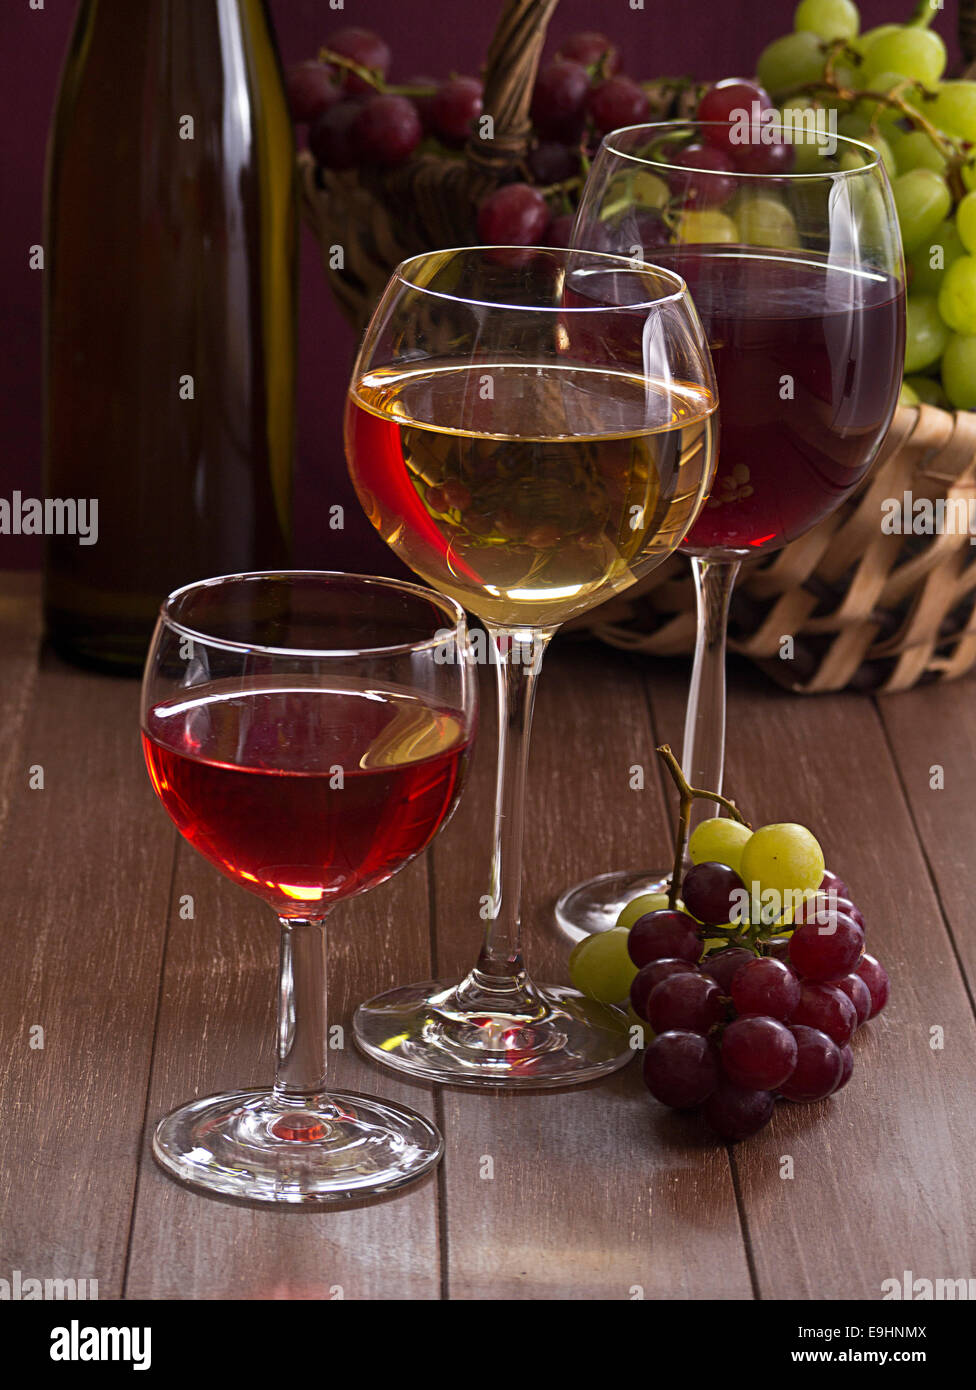 Rouge, blanc et rosé dans un verre de vin Banque D'Images